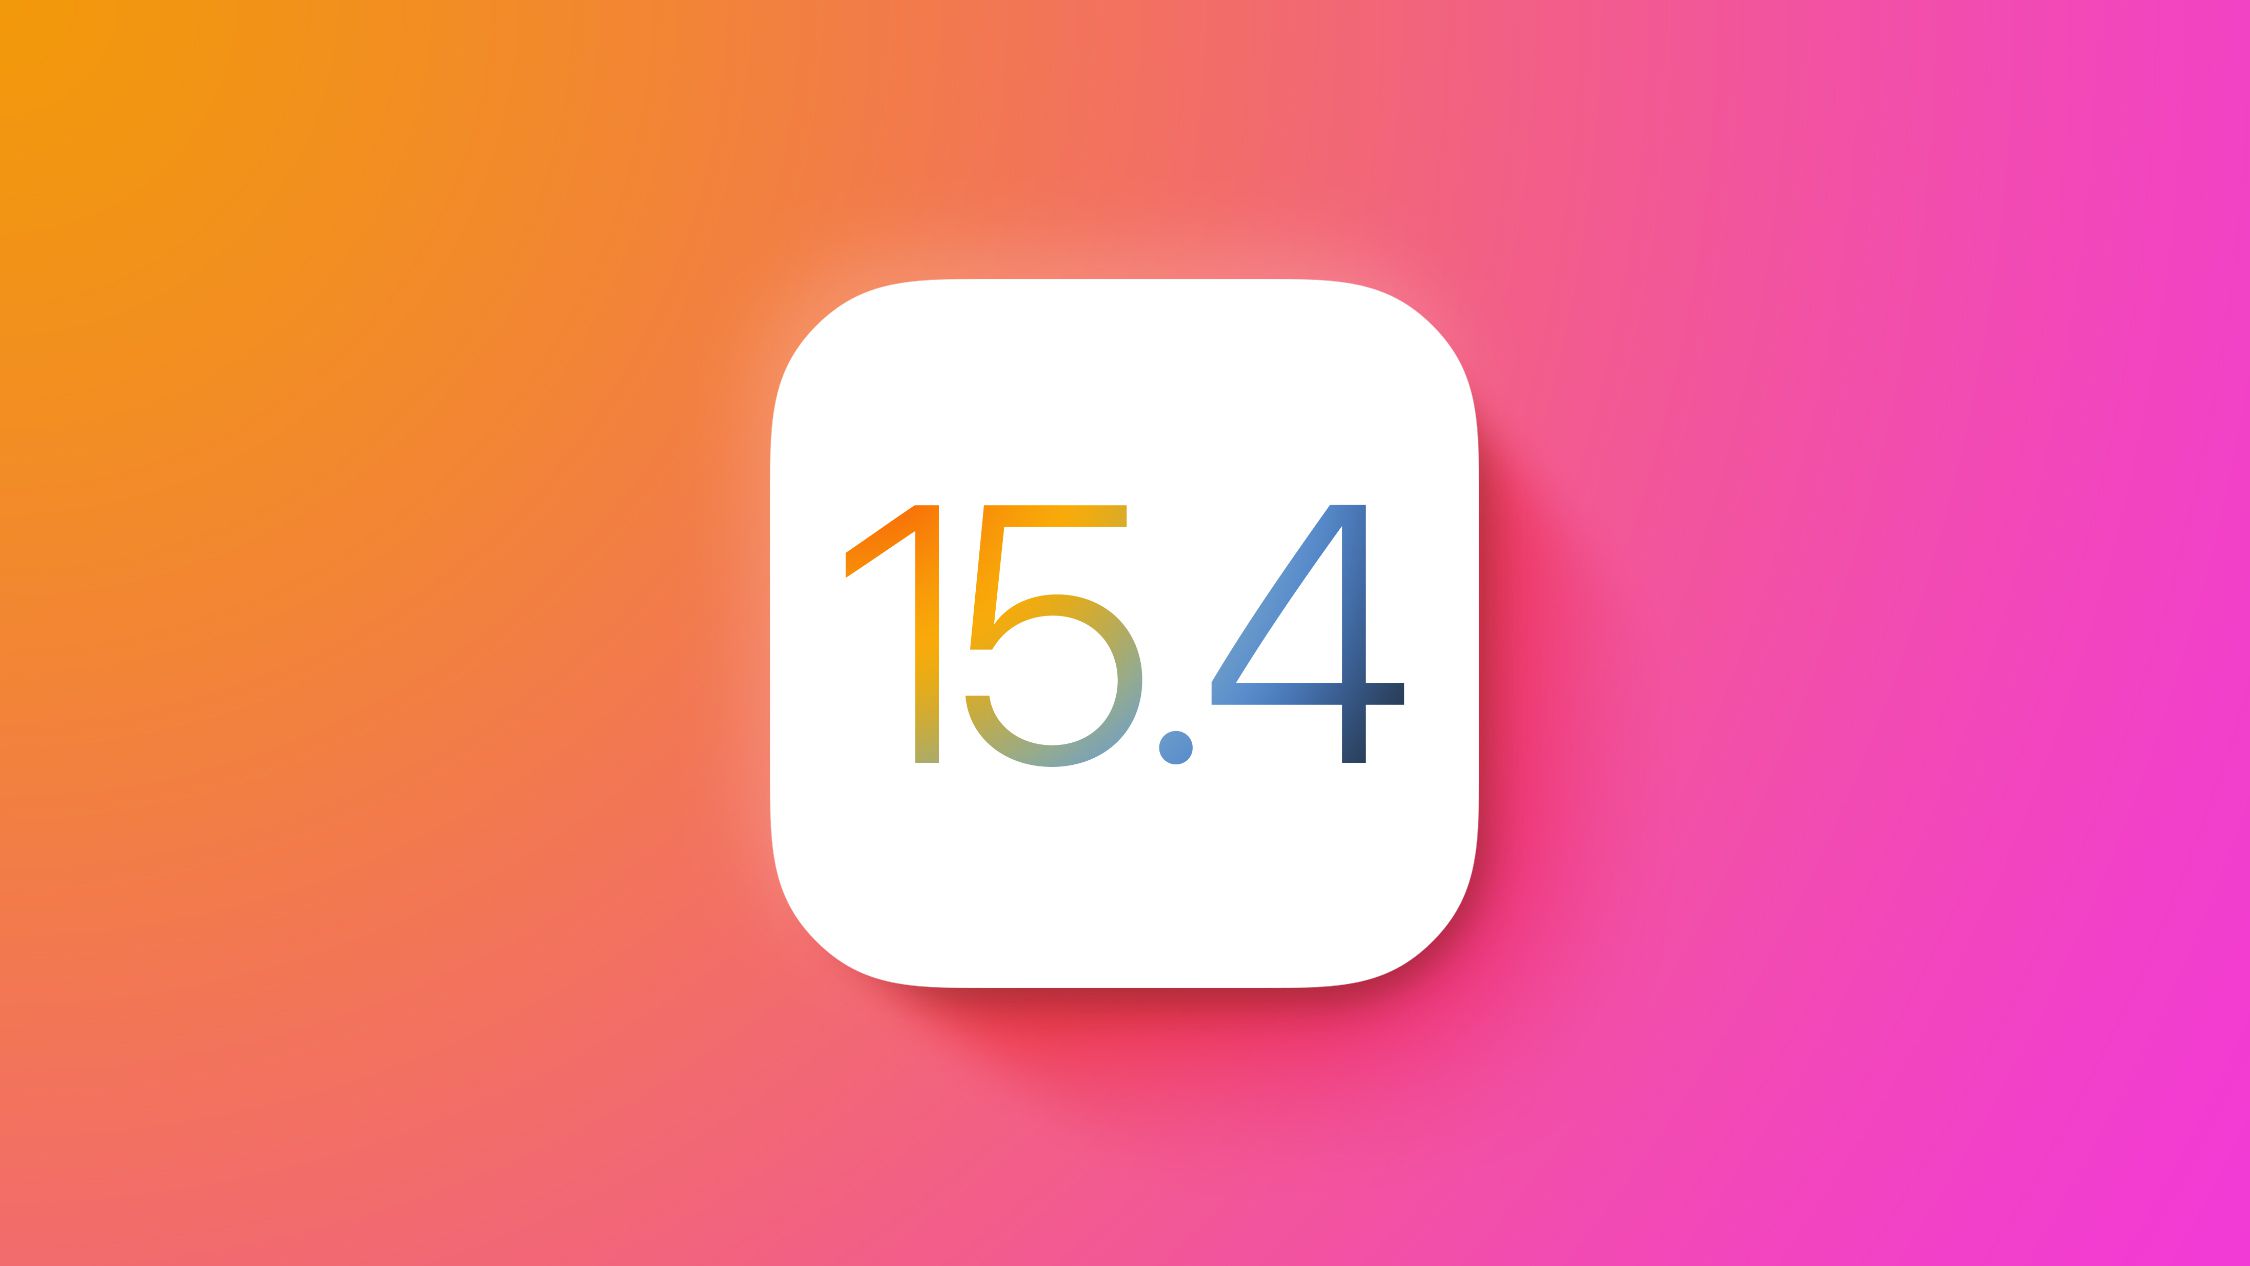 Letölthető az iOS 15.4, az iPadOS 15.4, a macOS Monterey 12.3 és a watchOS 8.5 